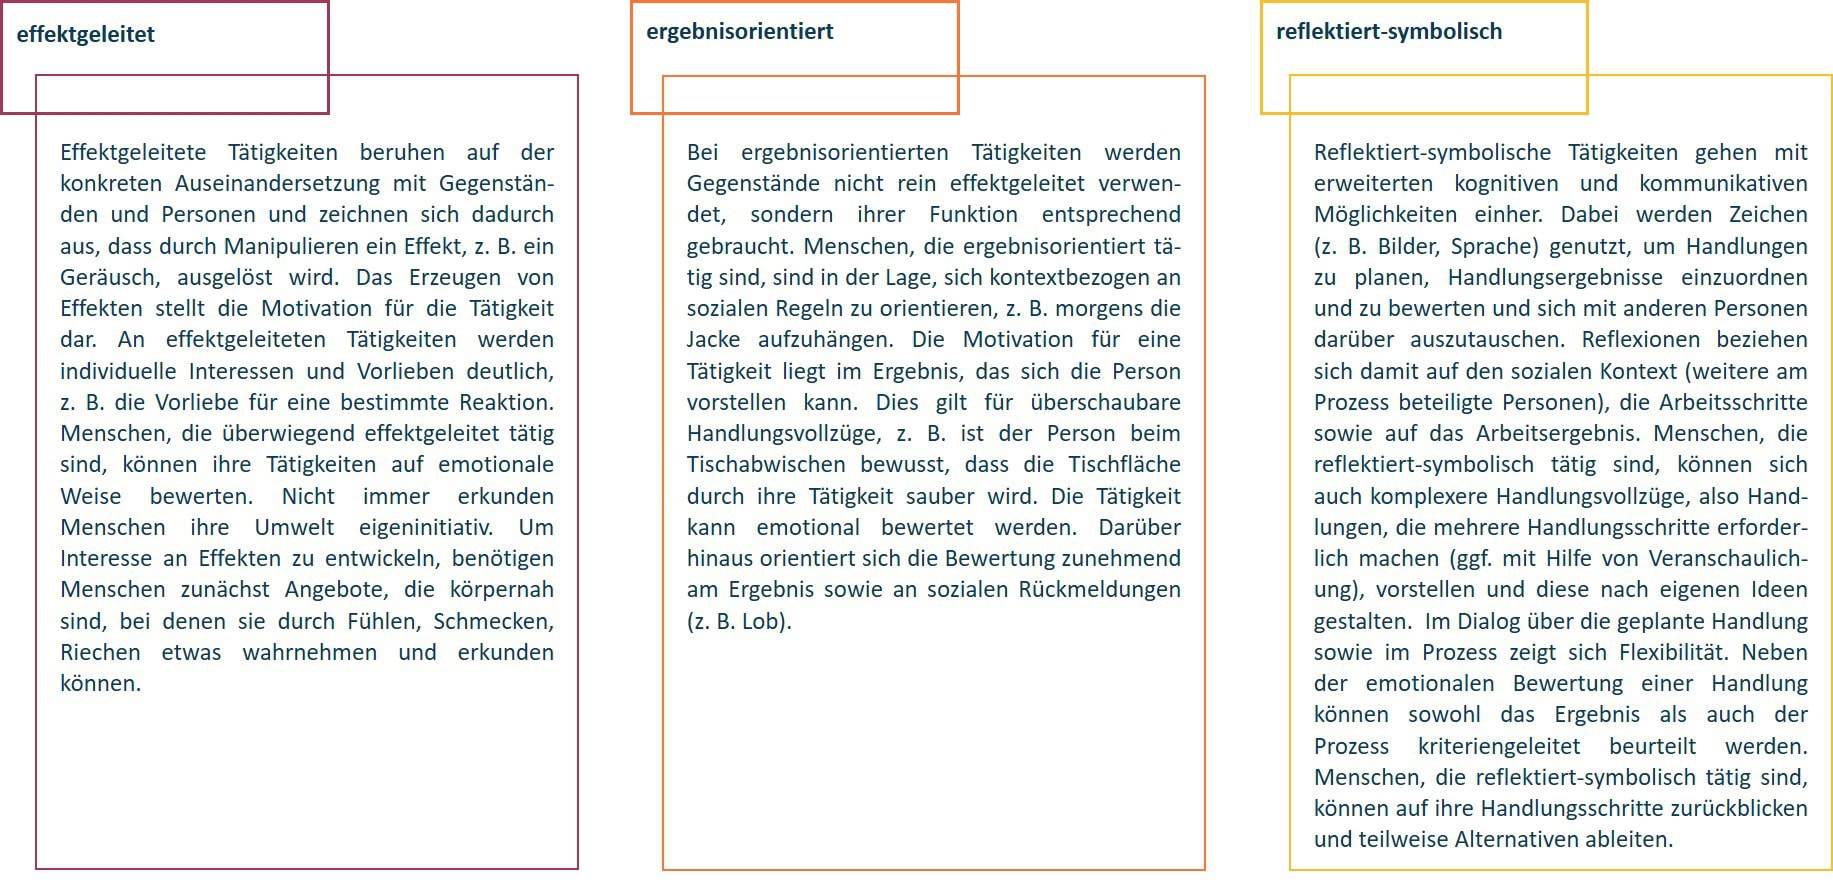 Diagramm mit den drei Kompetenzkategorien Wirksamkeitsorientierte, Ergebnisorientierte und Reflektierend-Symbolische Kompetenzen, jeweils mit Schlüsselpunkten im deutschen Text beschrieben.